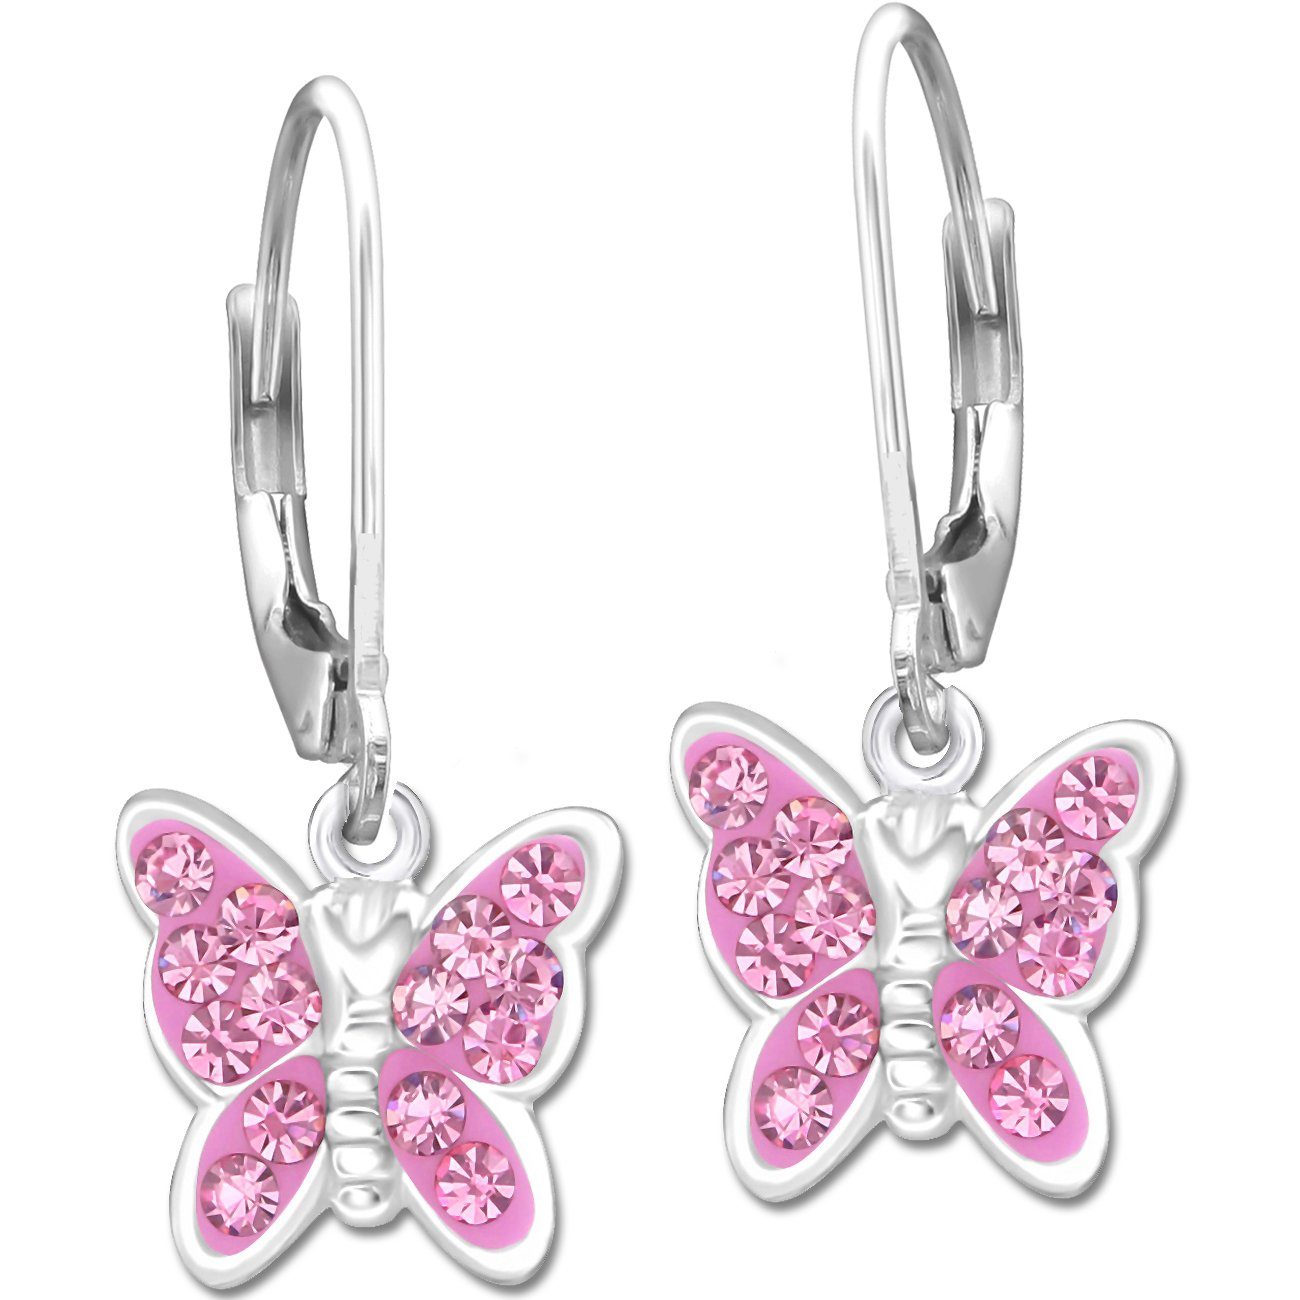 Limana Paar Ohrhänger Mädchen Kinder hängende Ohrringe echt 925 Sterling Silber Schmetterling K653o rosa